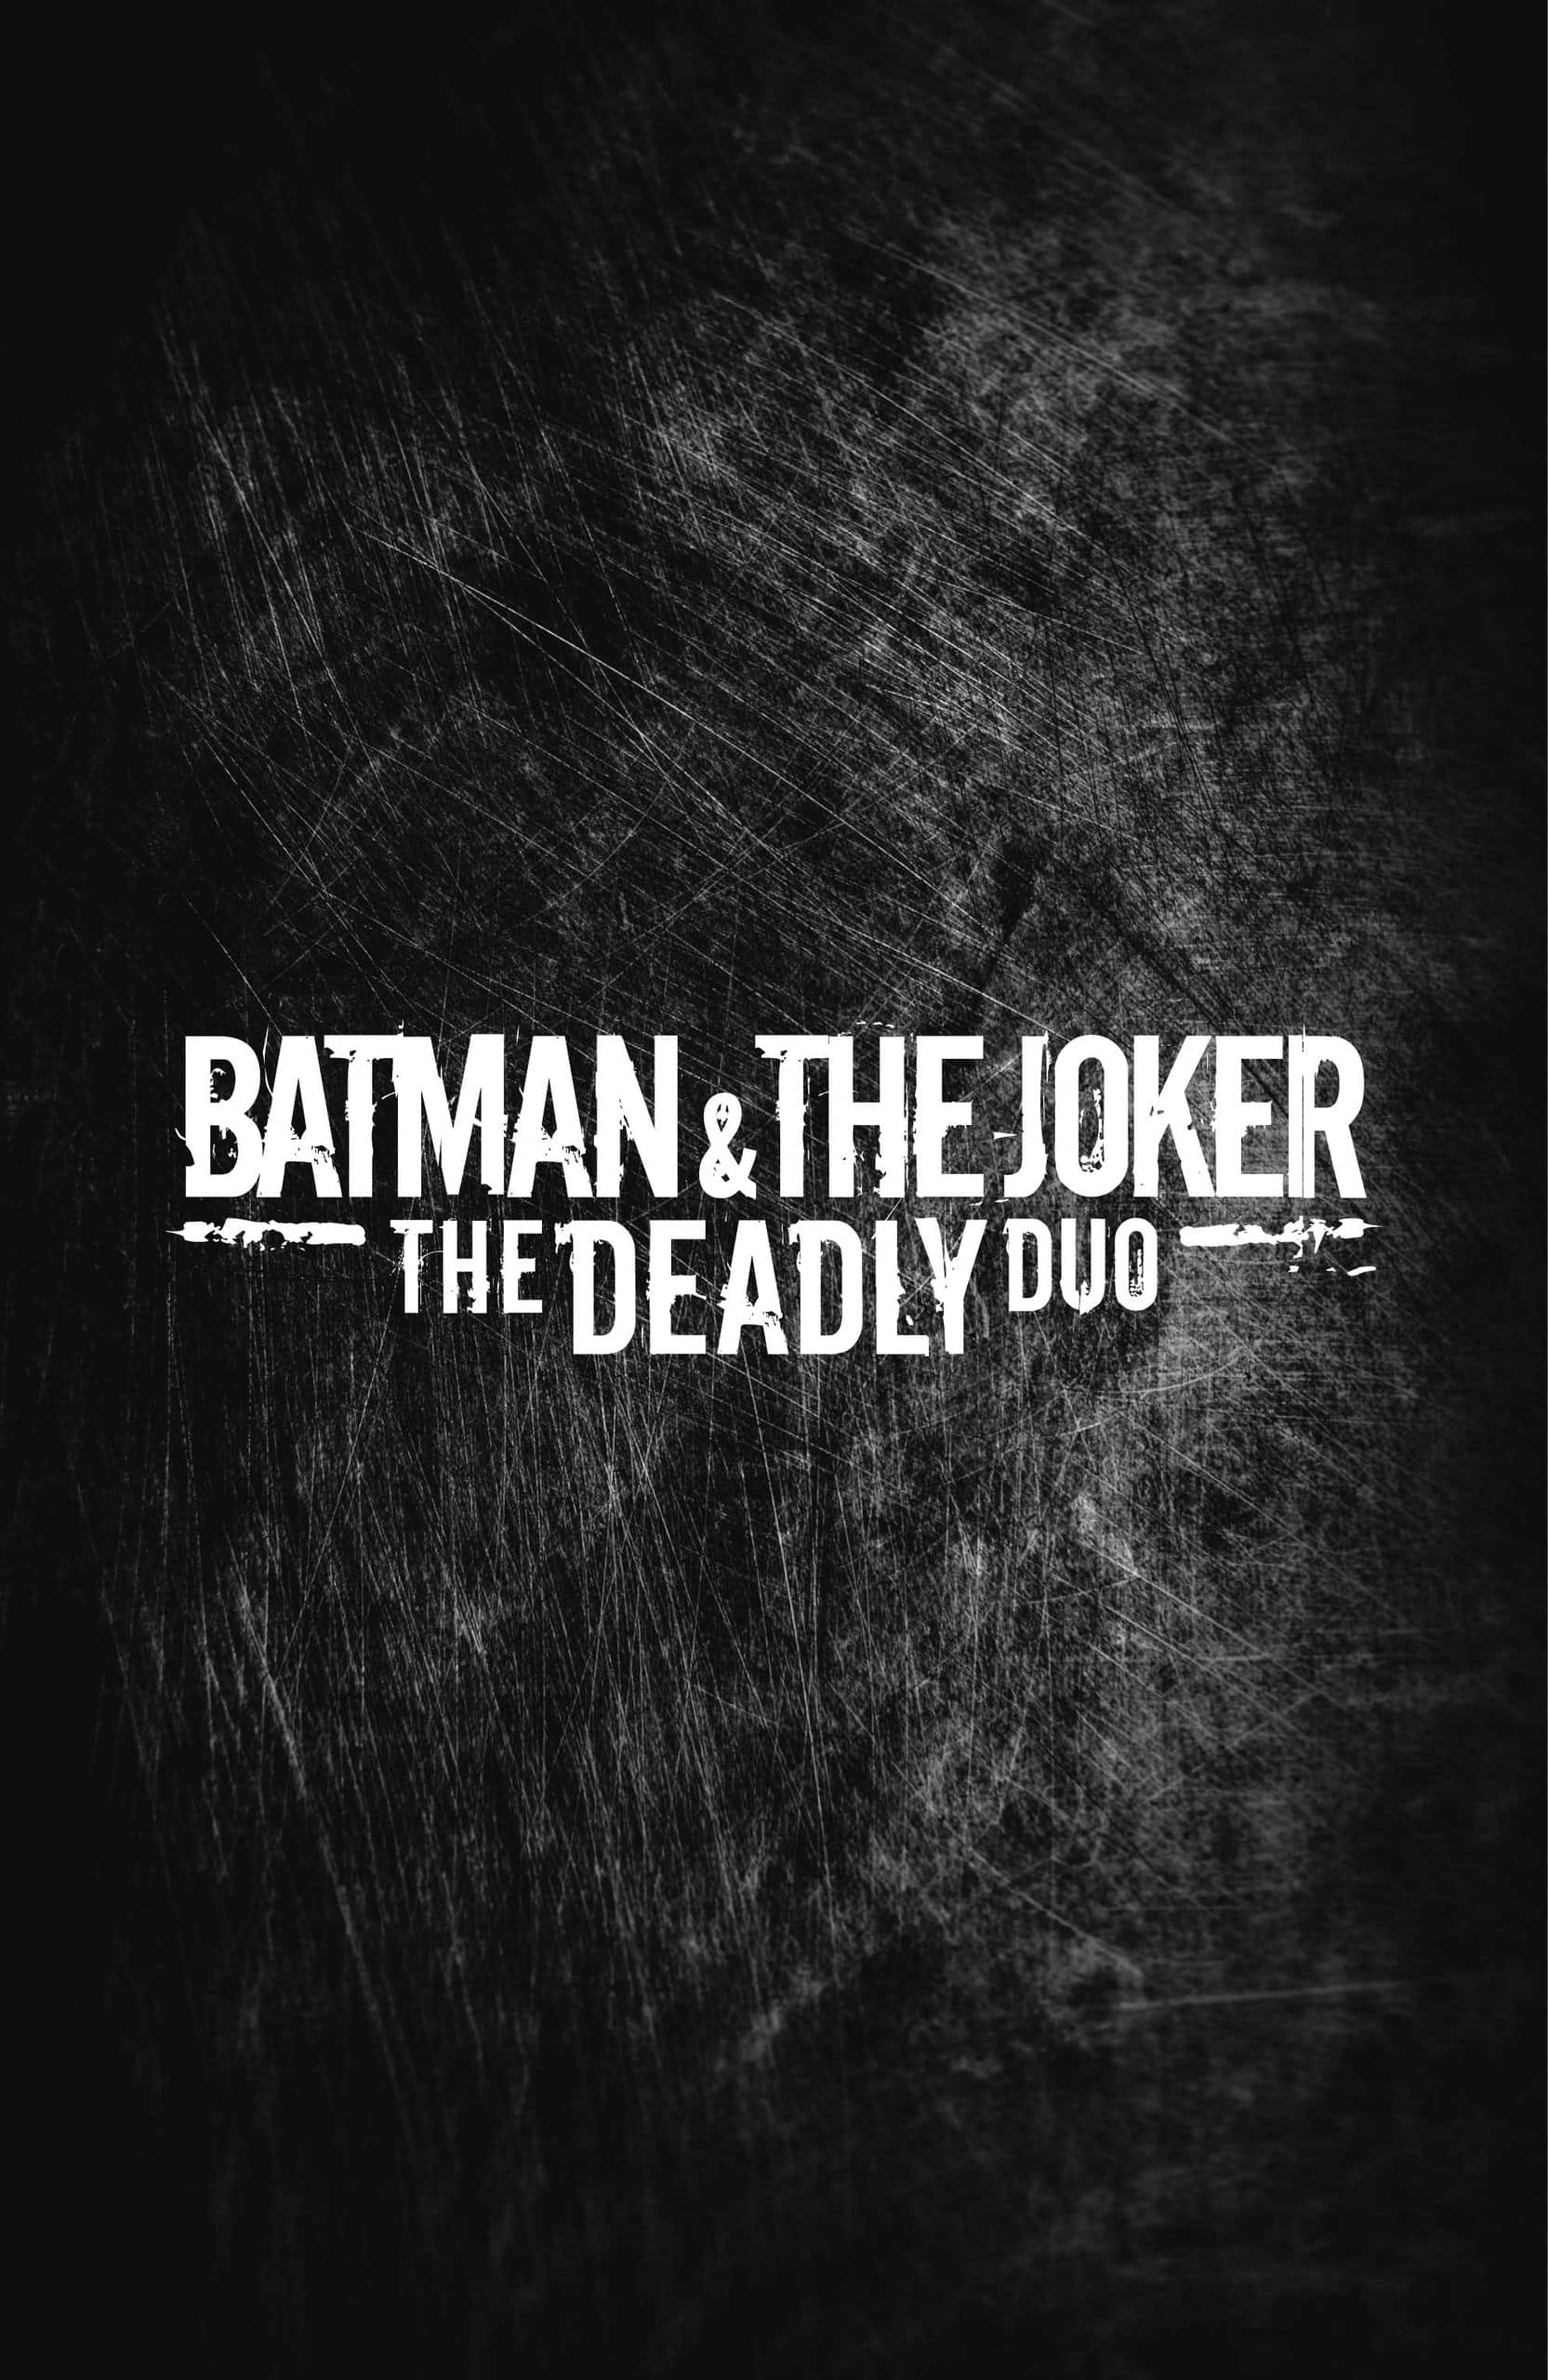 https://langgeek.net/wp-content/webpc-passthru.php?src=https://langgeek.net/wp-content/uploads/2022/12/Batman-The-Joker-The-Deadly-Duo-2022-002-004.jpg&nocache=1